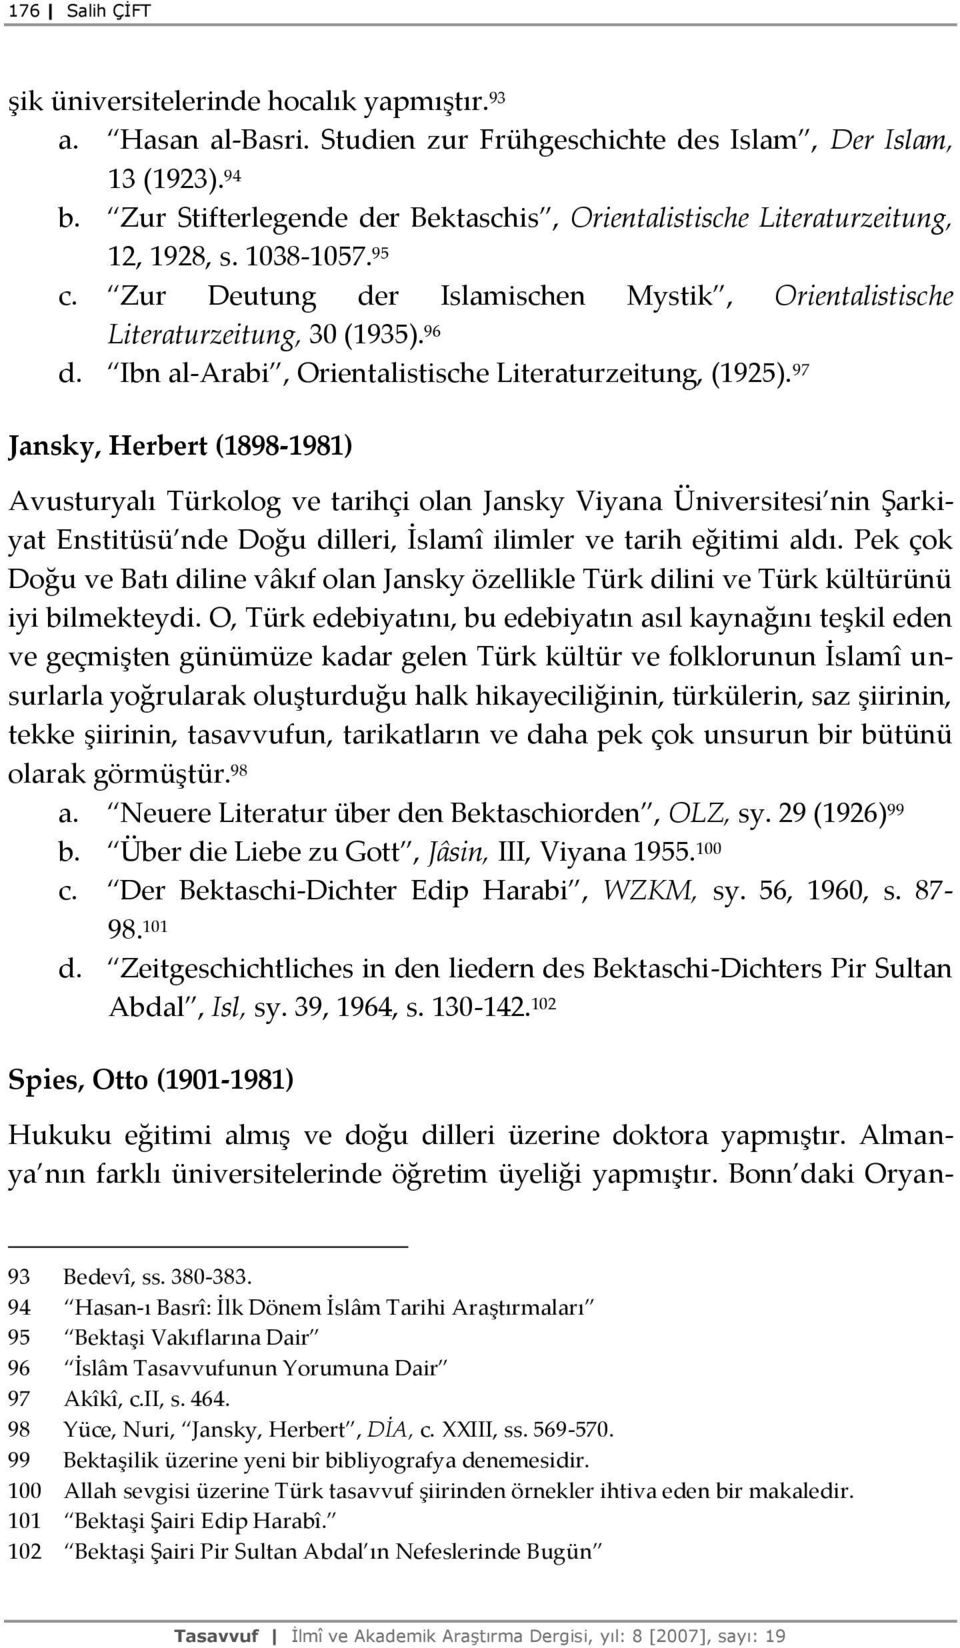 Ibn al-arabi, Orientalistische Literaturzeitung, (1925).